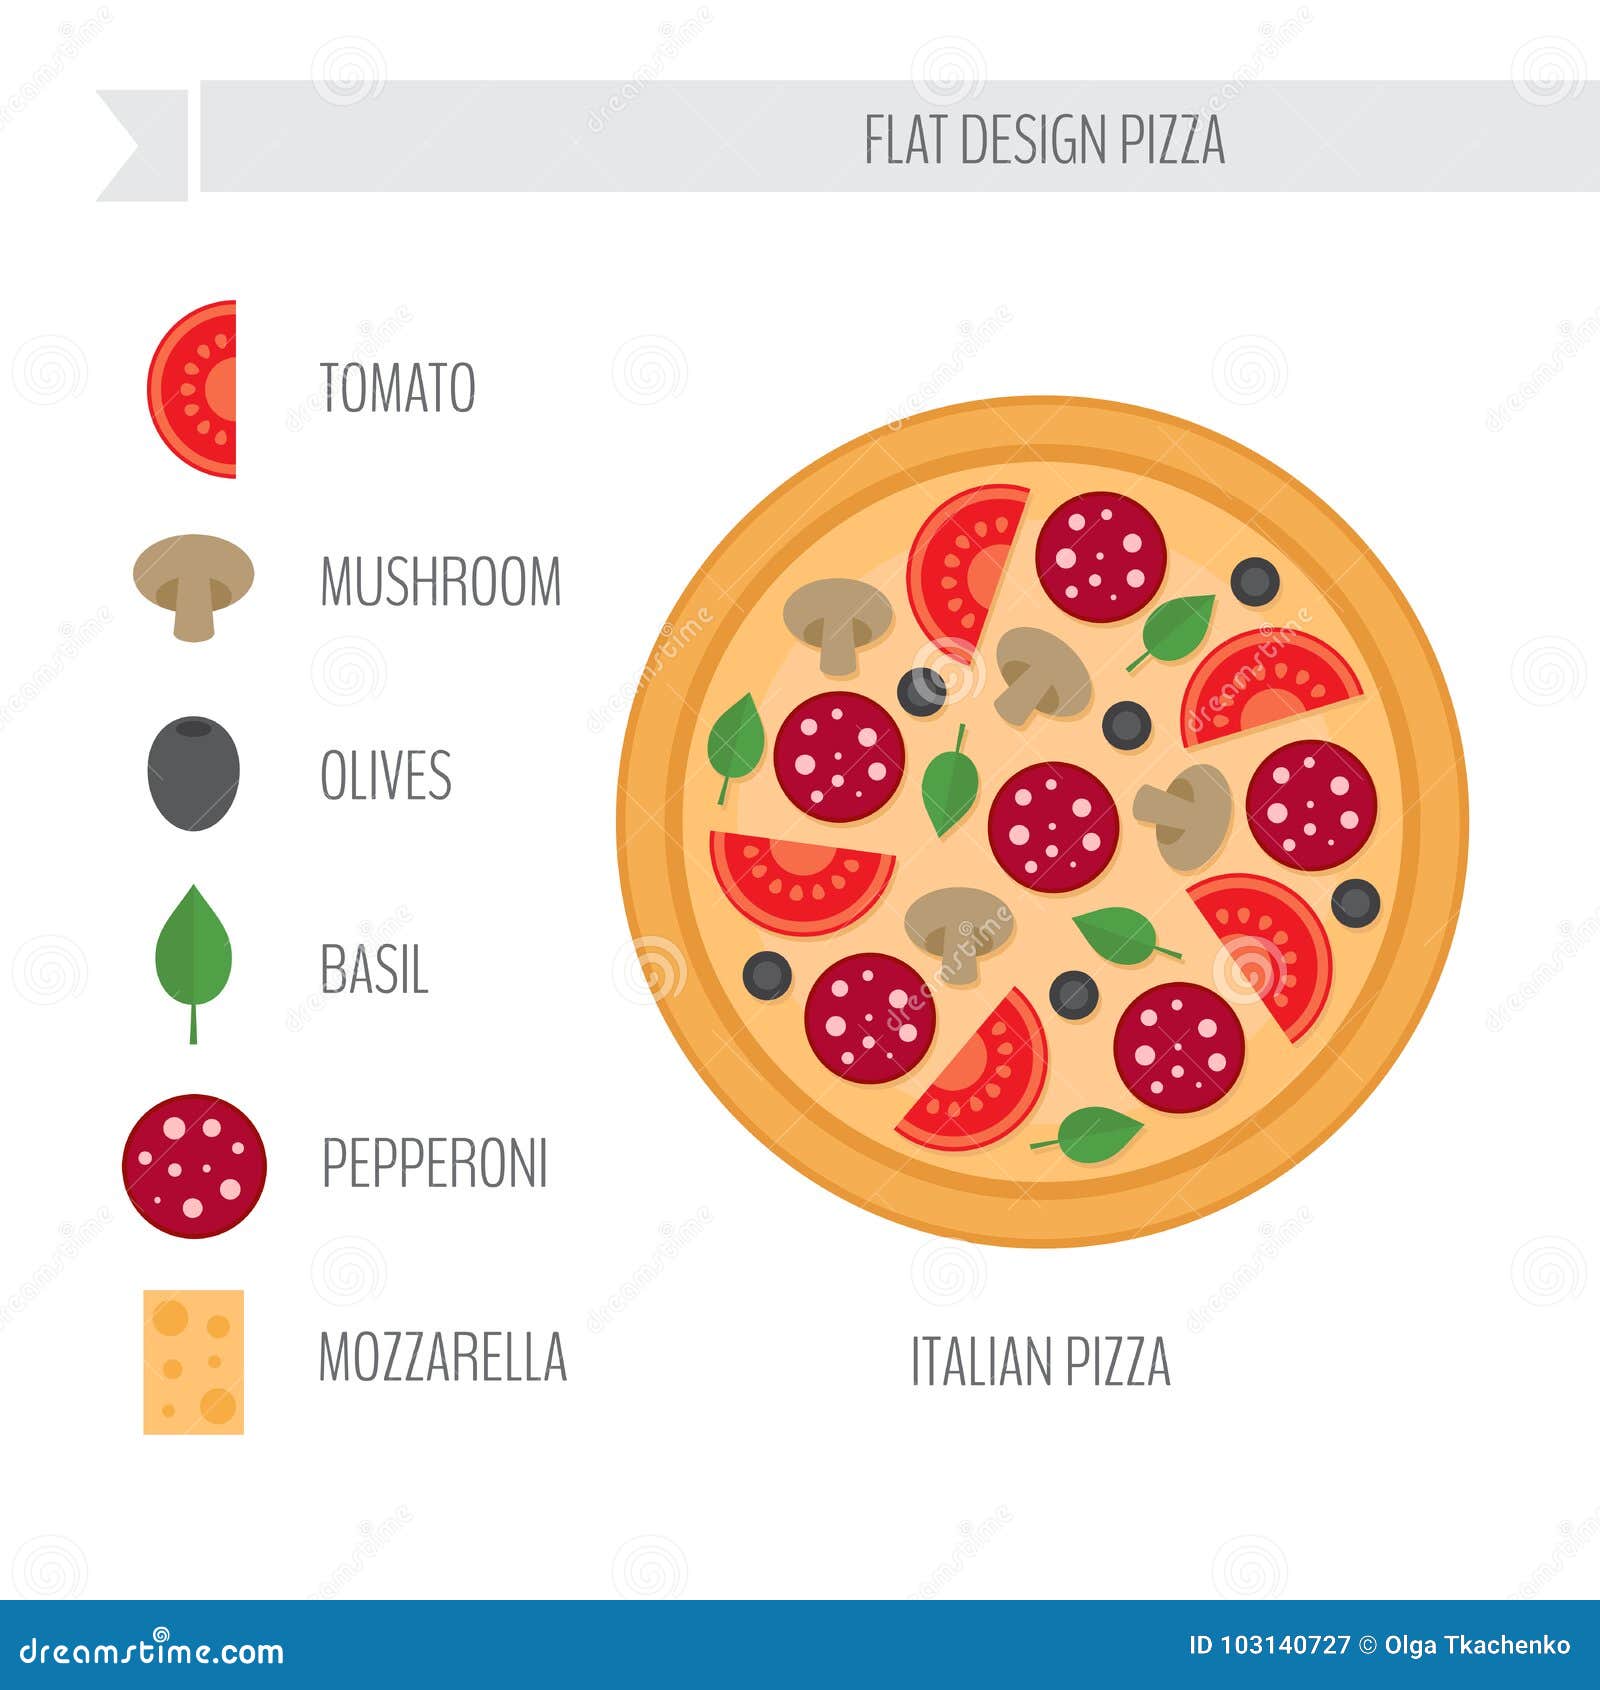 схема приготовления пиццы пепперони фото 8